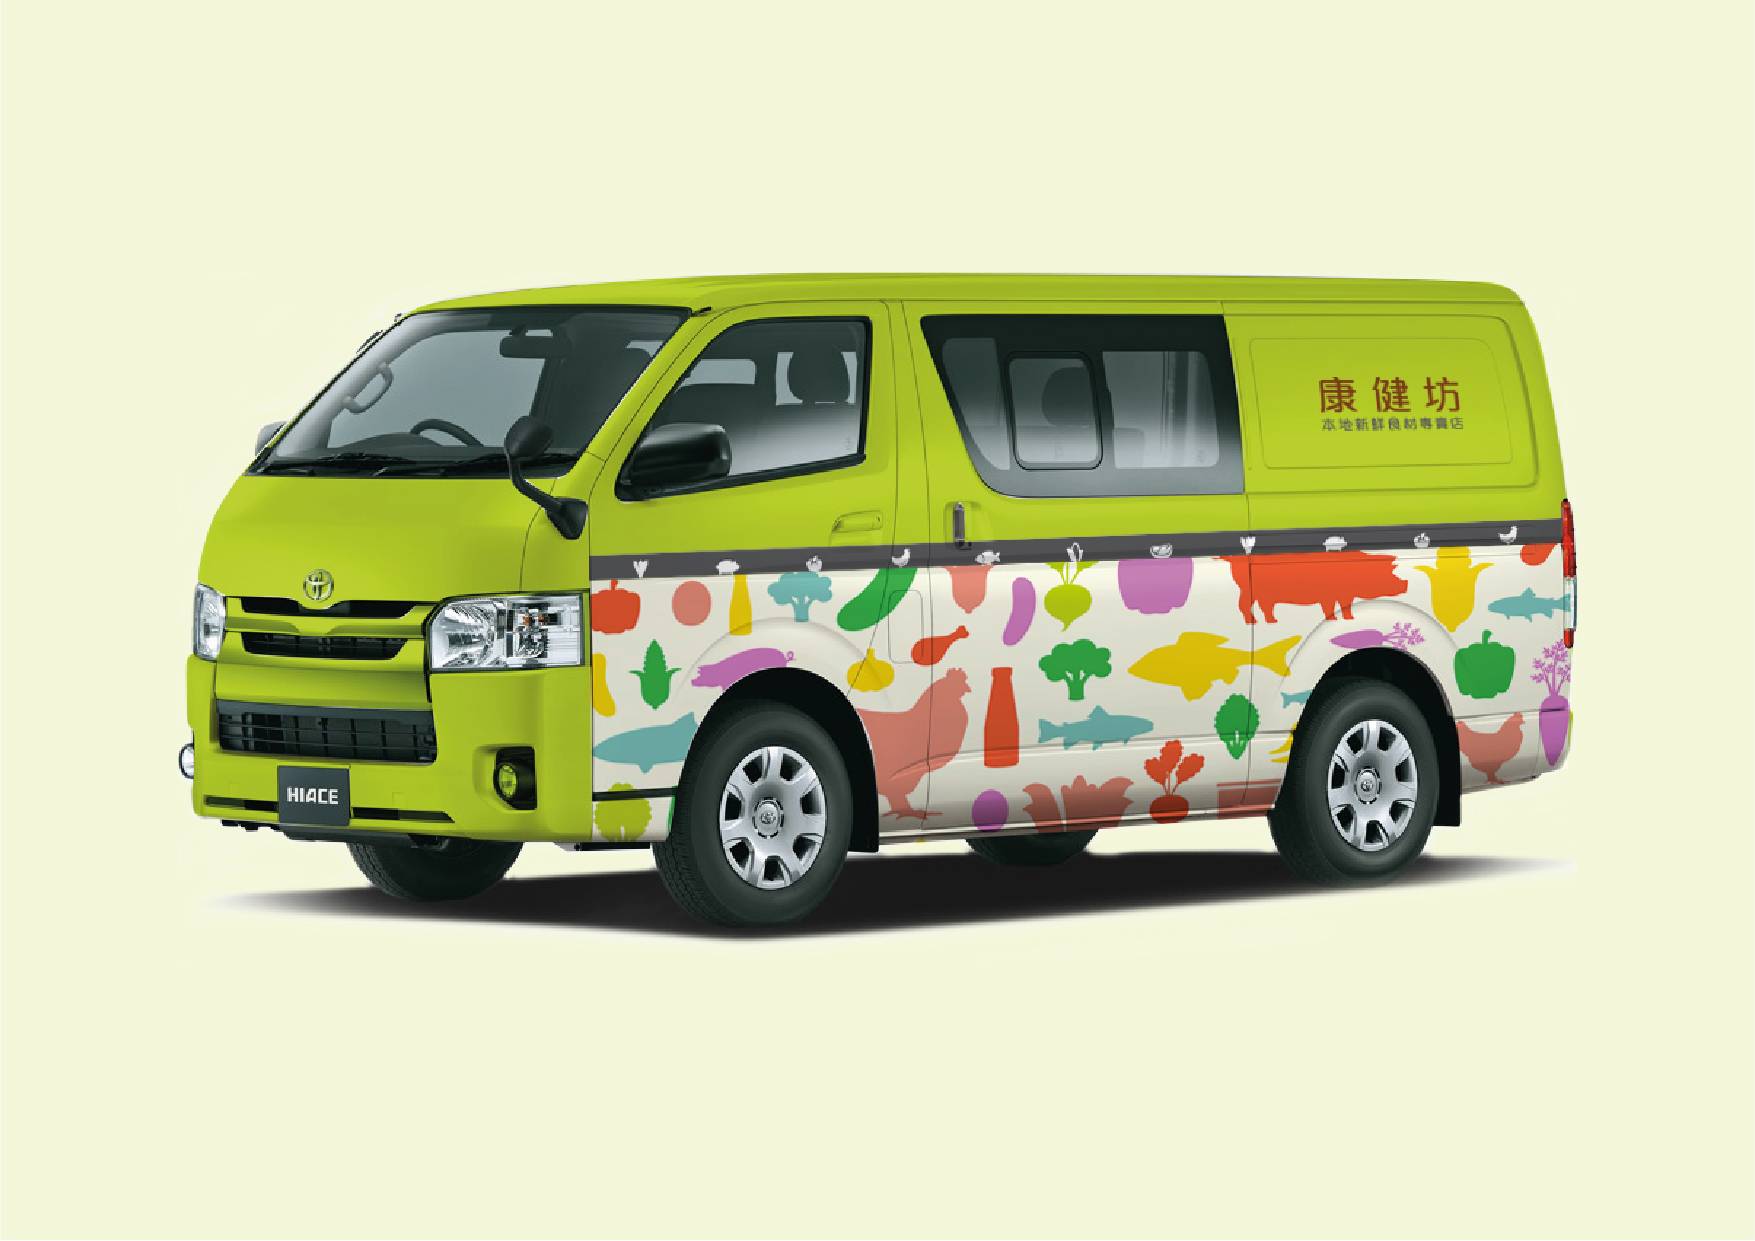 Ka Mei Chicken rebranding for delivery van